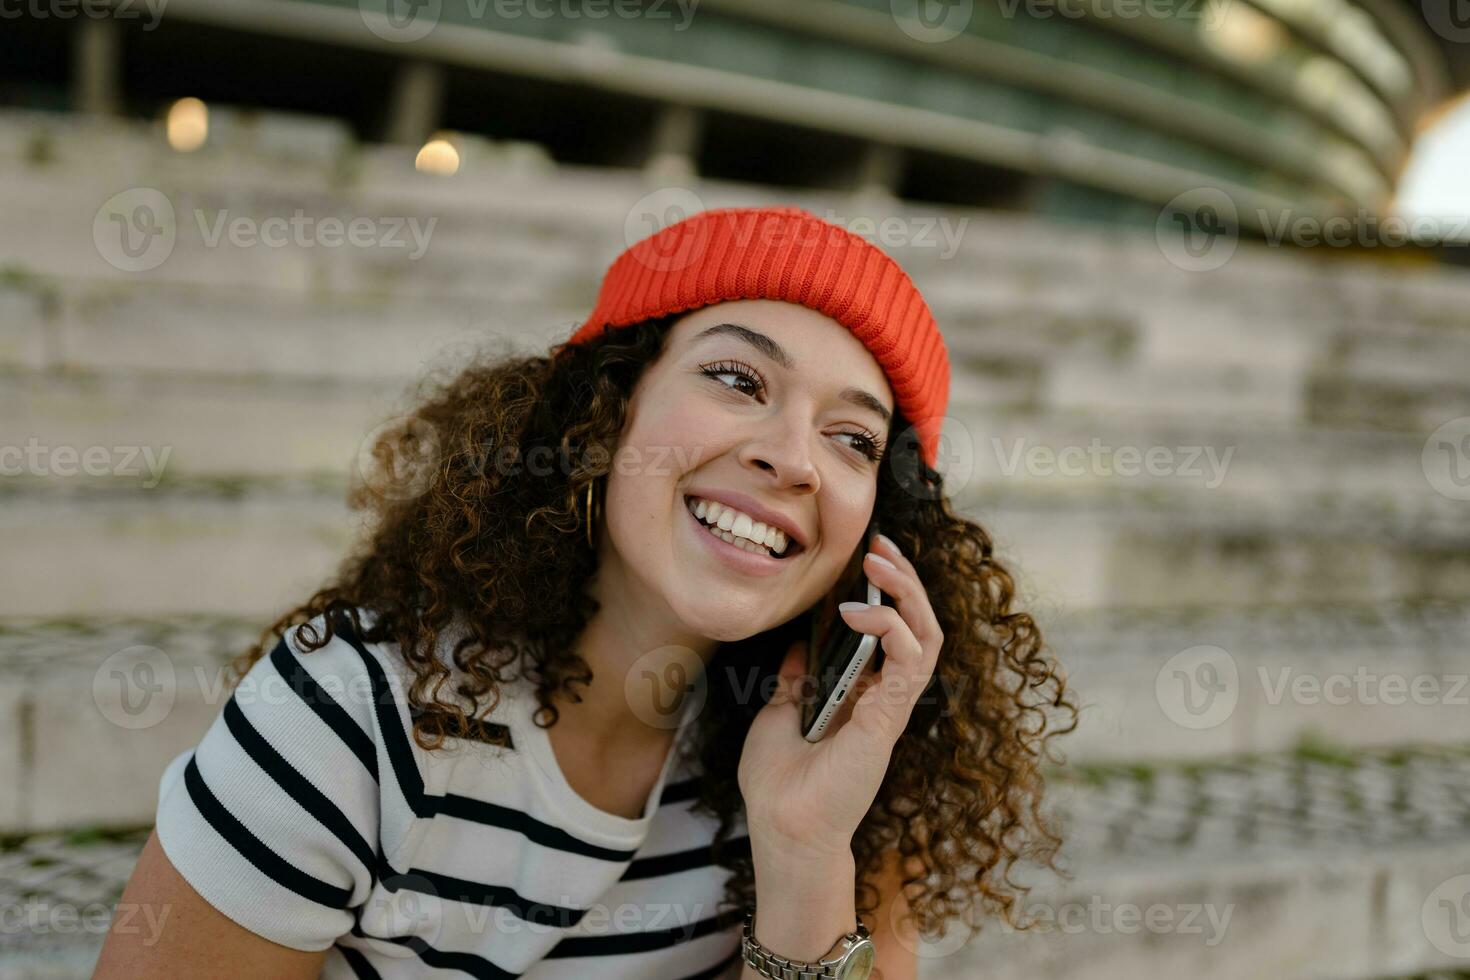 bonito Rizado sonriente mujer sentado en ciudad calle en a rayas camiseta y de punto rojo sombrero, utilizando teléfono inteligente foto